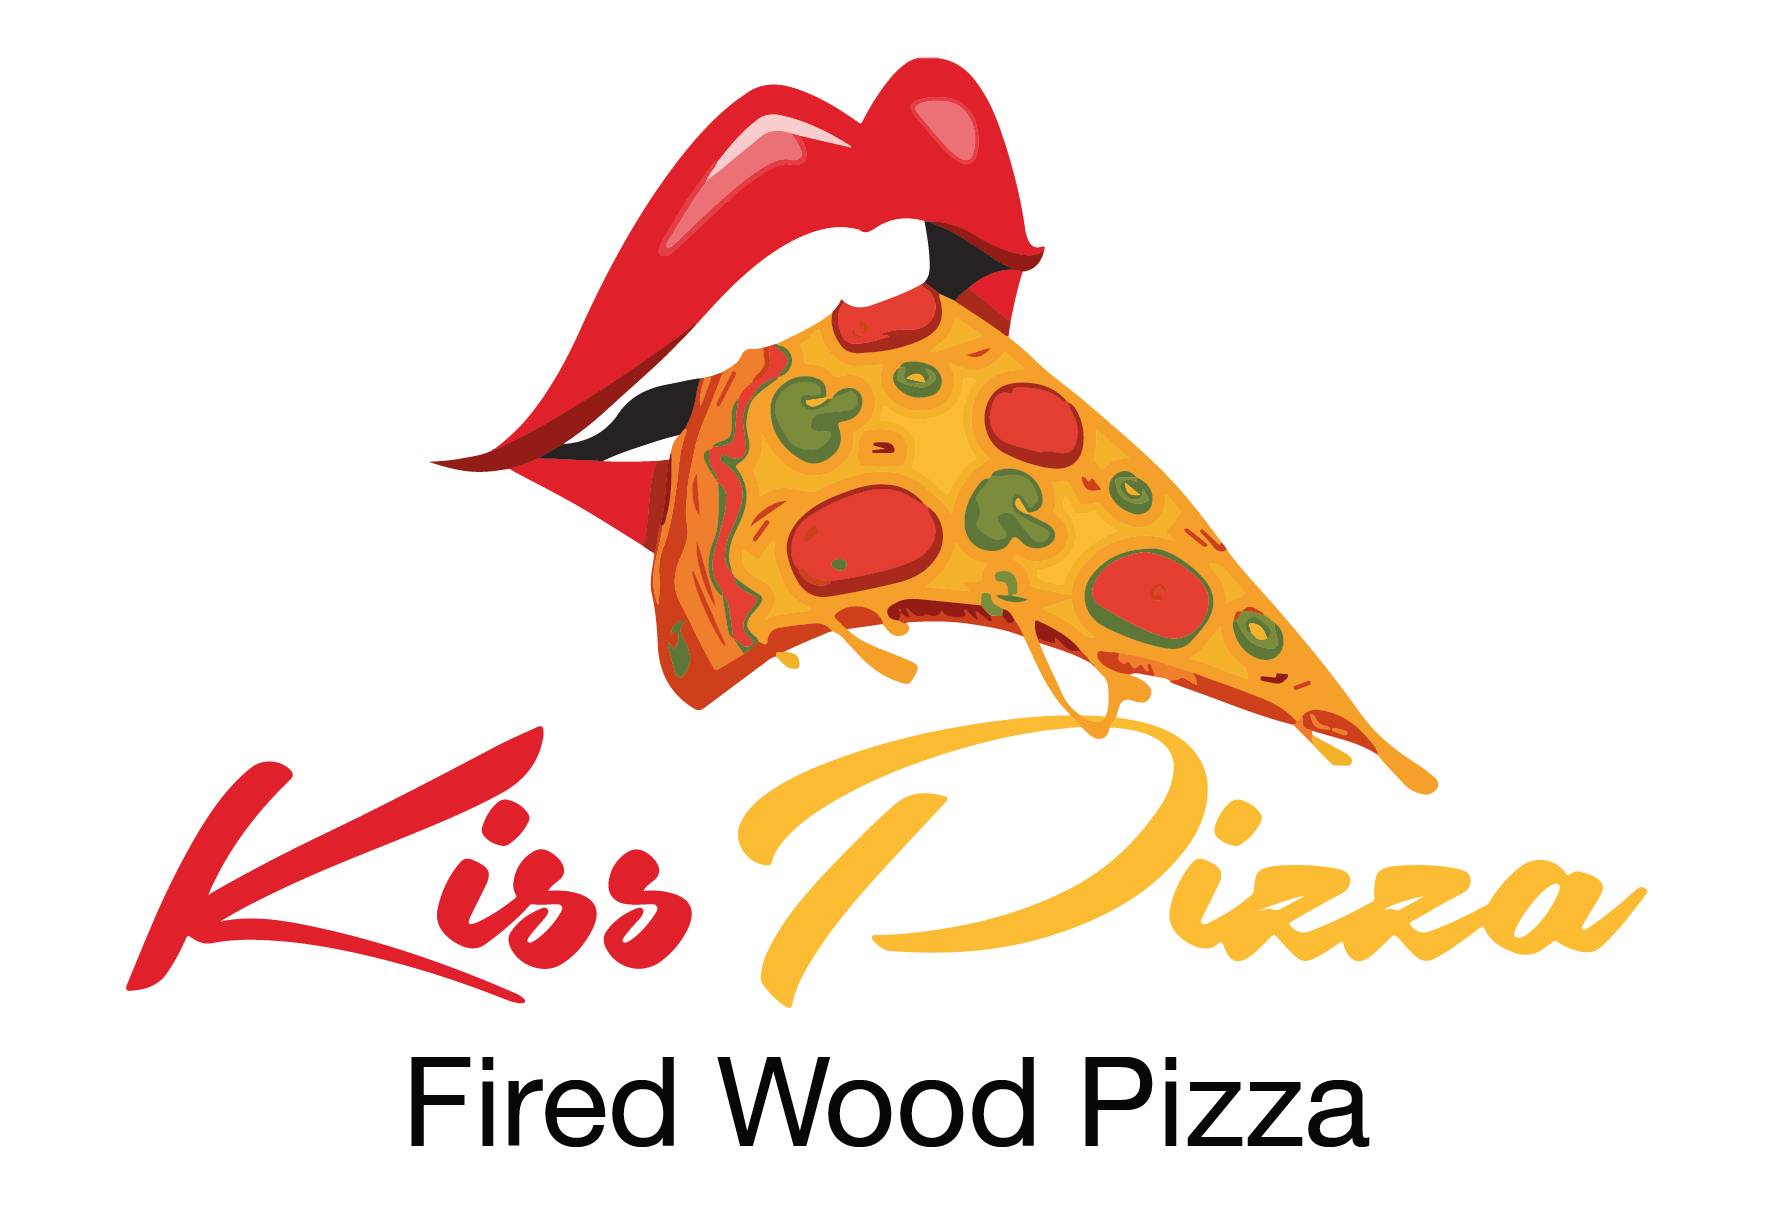 Kiss Pizza - Fired Wood Pizza I مطعم بوس البيتزا - بيتزا على الحطب